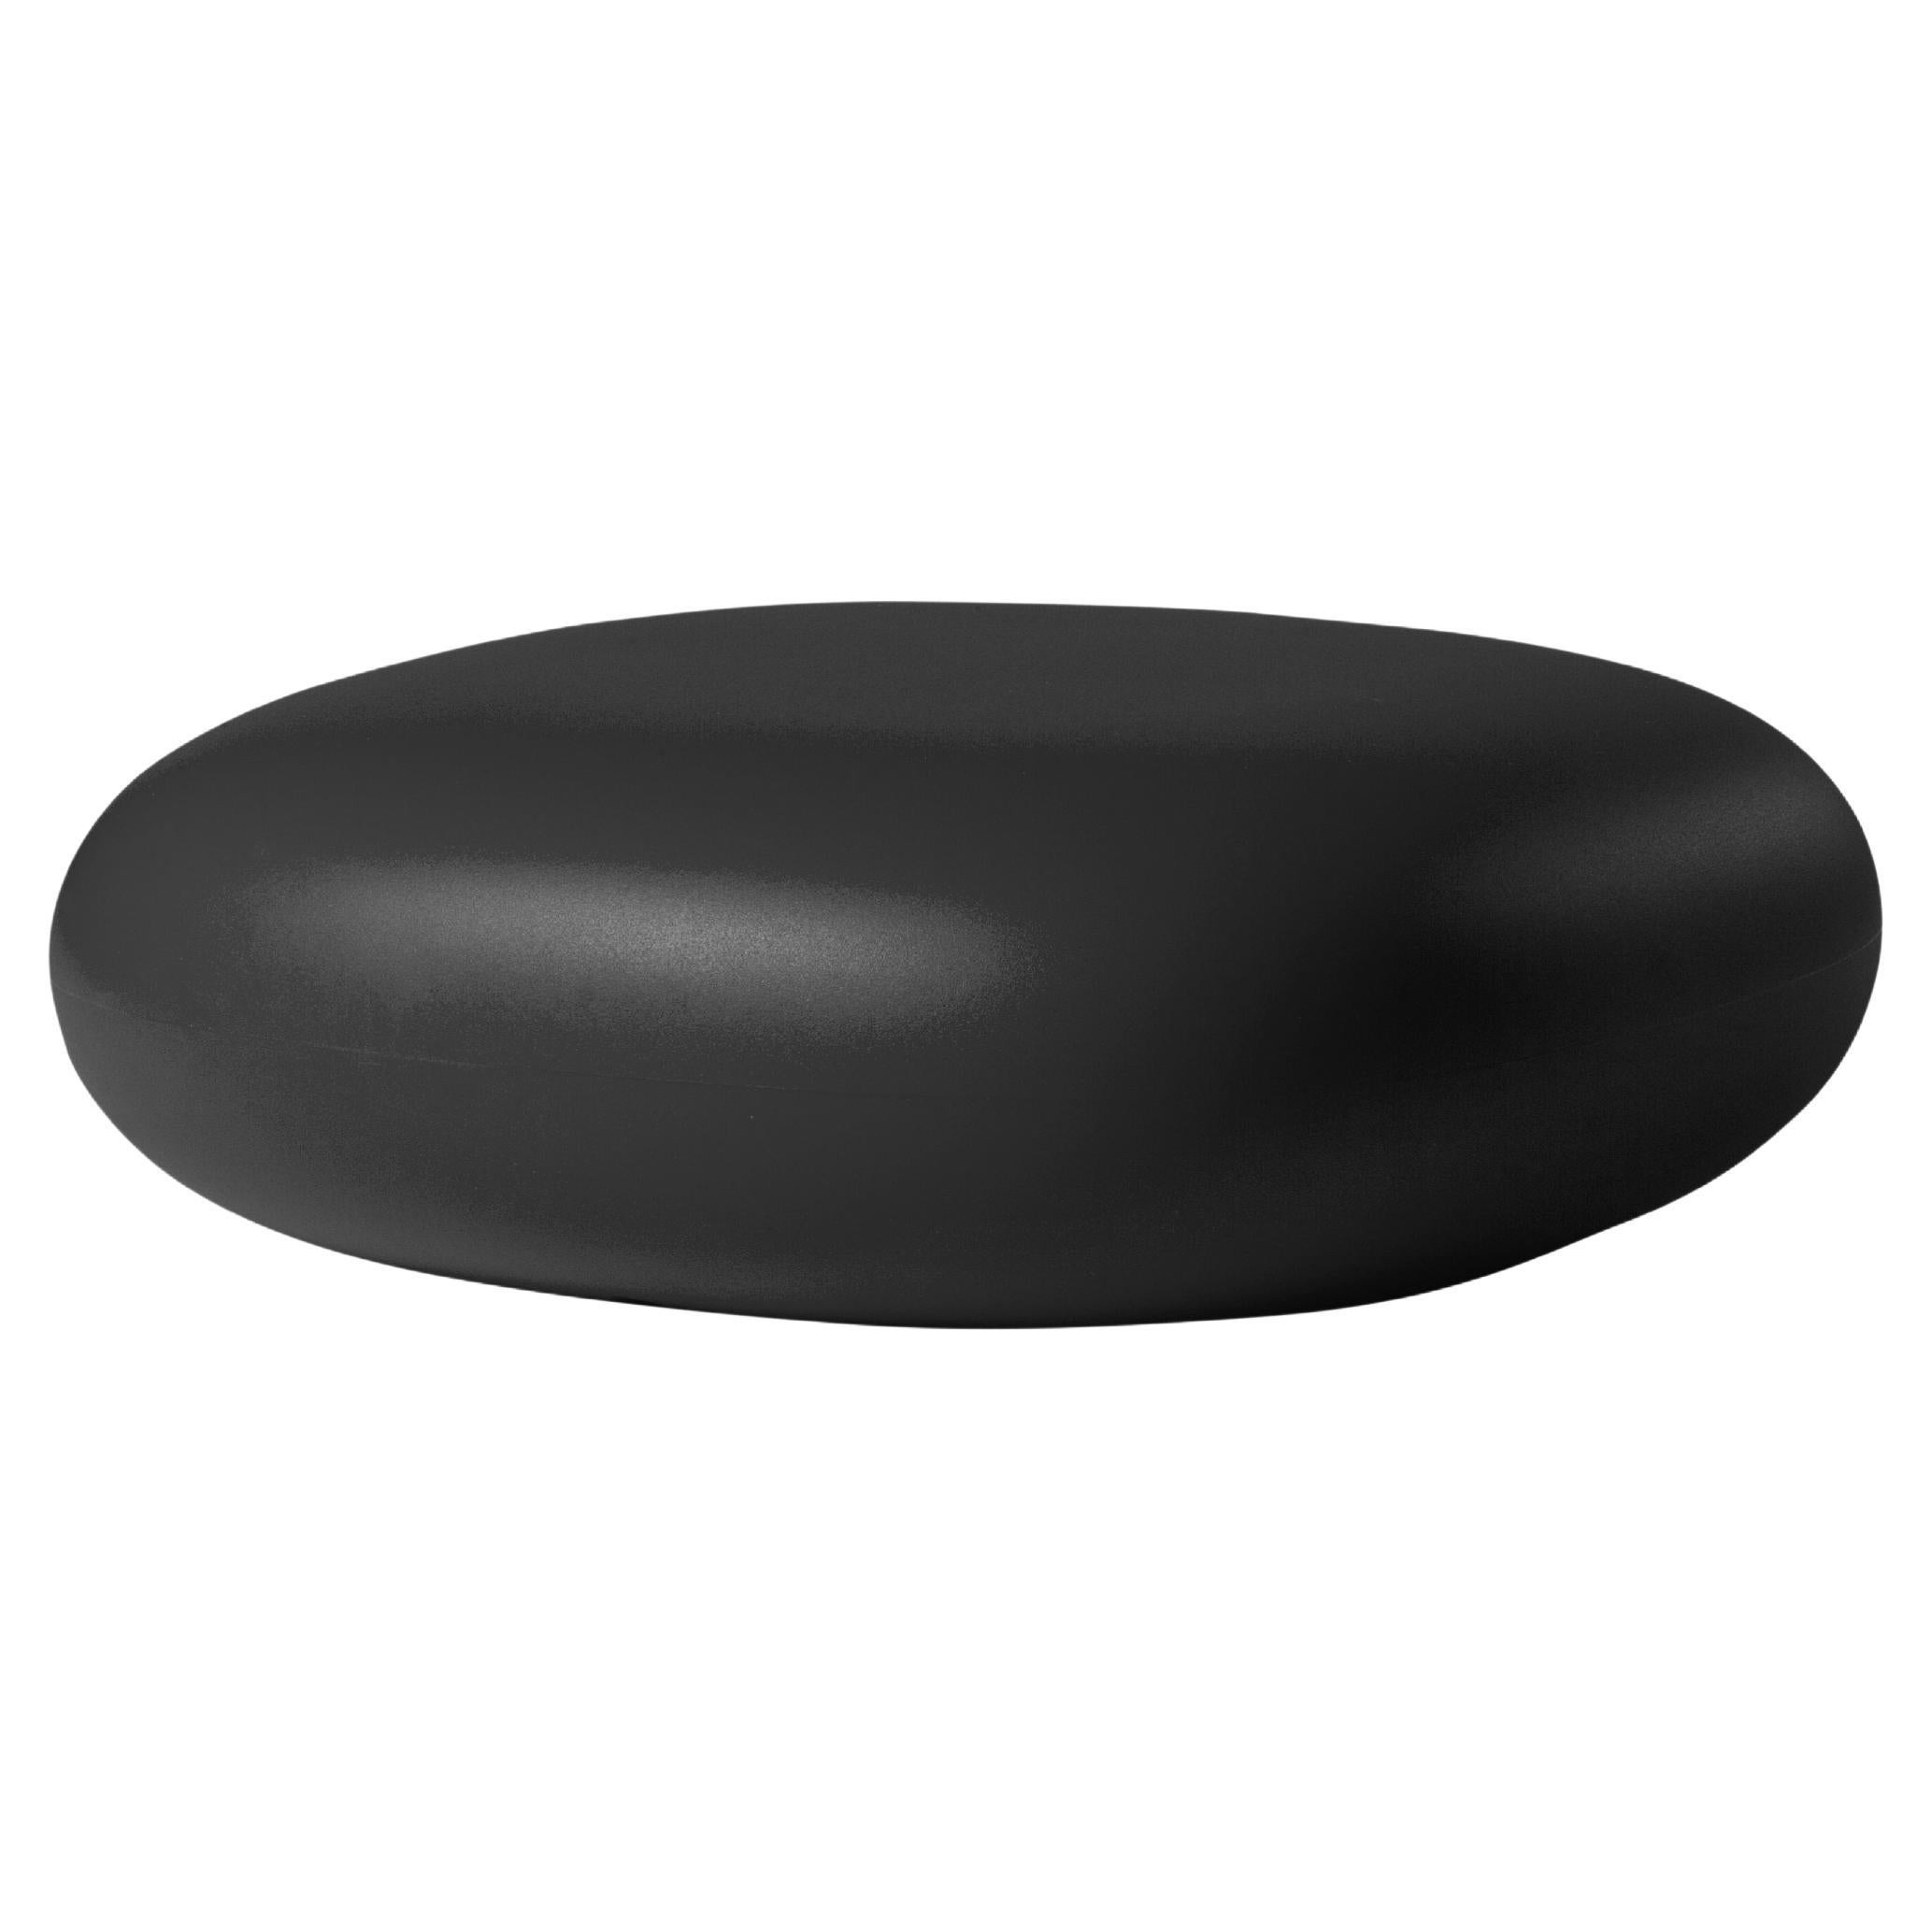 Slide Design Chubby Low Pouf in Jet Black by Marcel Wanders For Sale